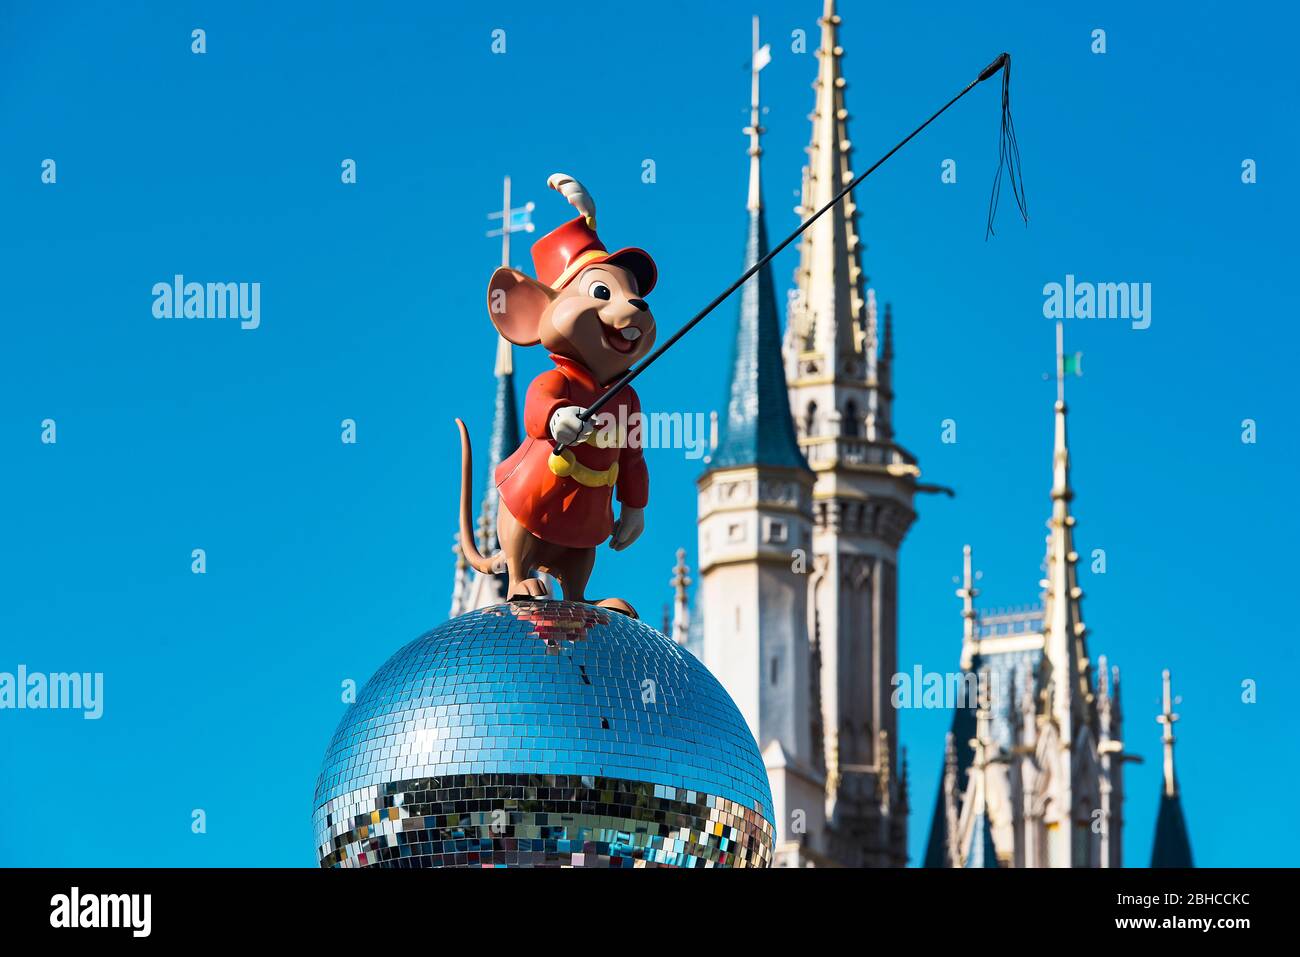 TOKIO - Dic 31: Tokio Disneyland o Tokio Disneysea, héroe de dibujos animados y detalle del Castillo en Tokio el 31 de diciembre. 2016 en Japón Foto de stock